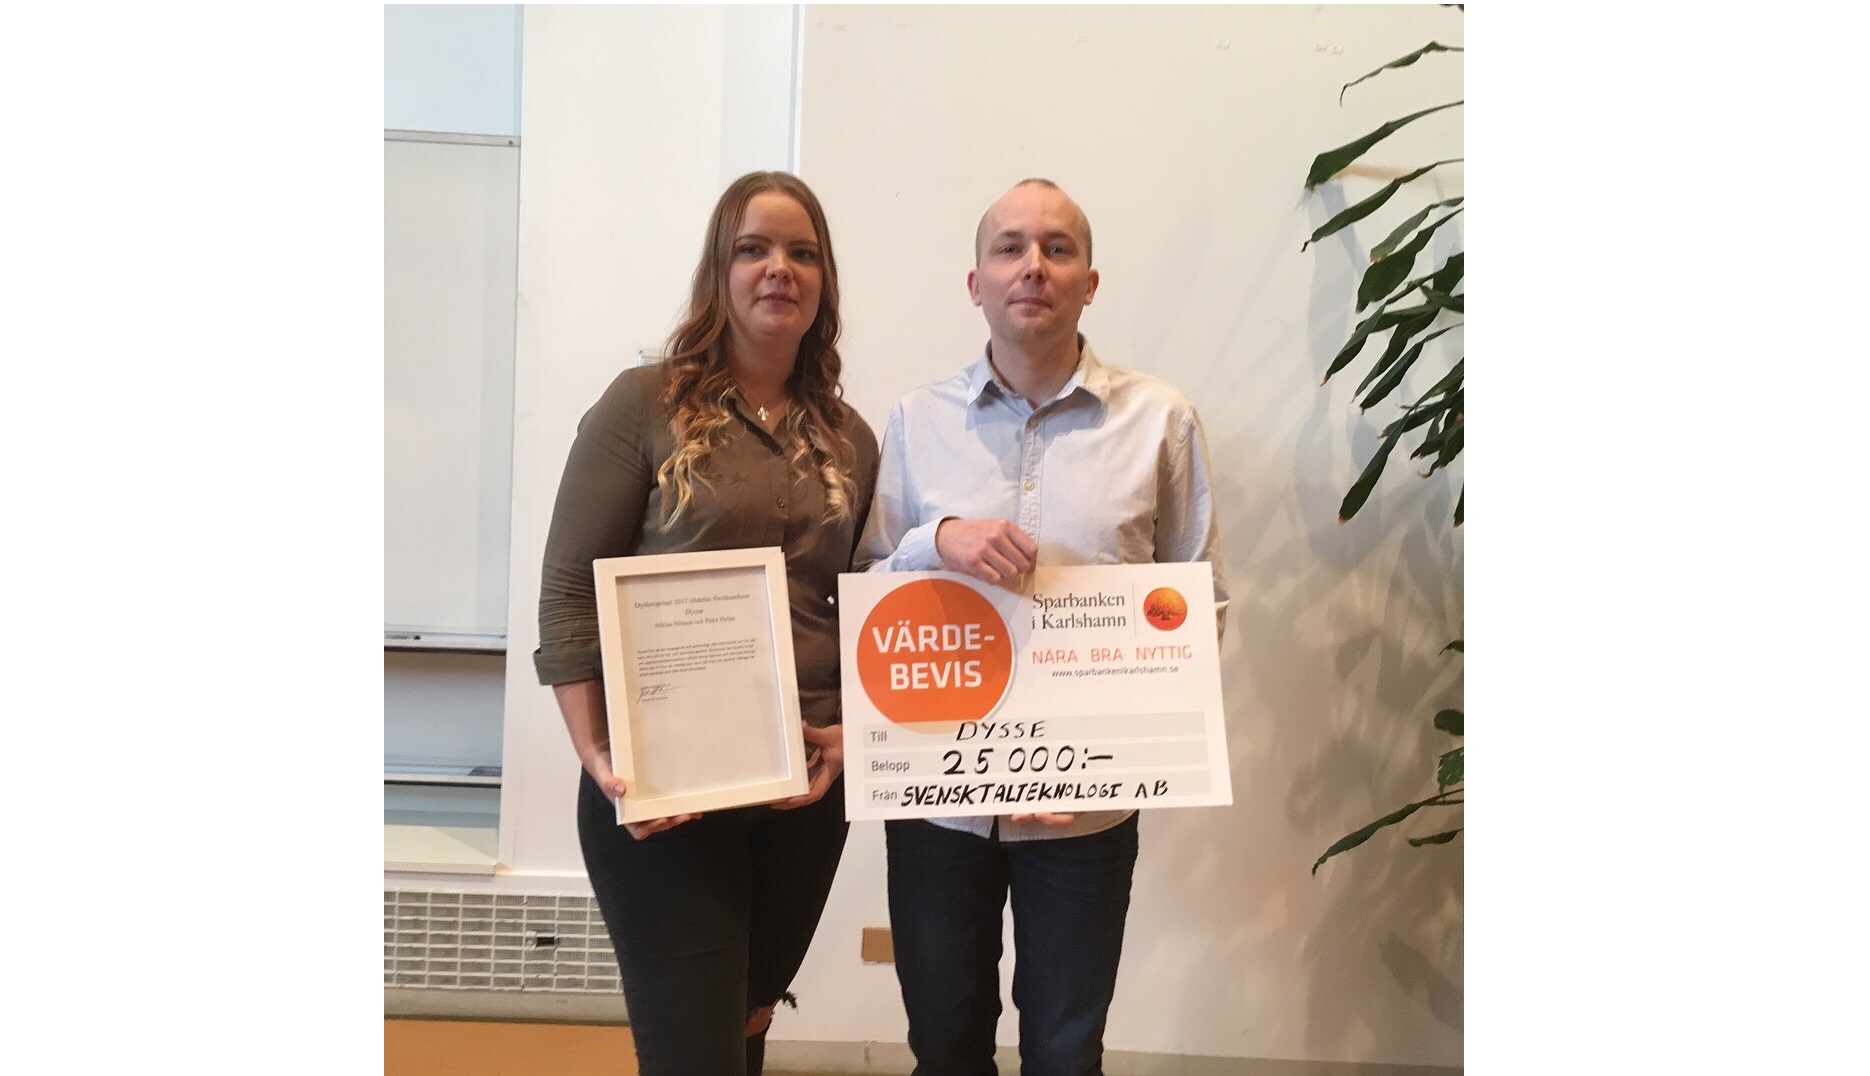 Petra Nylén och Niklas Nilsson med diplom och prischeck. (Foto: Inger Rålenius)